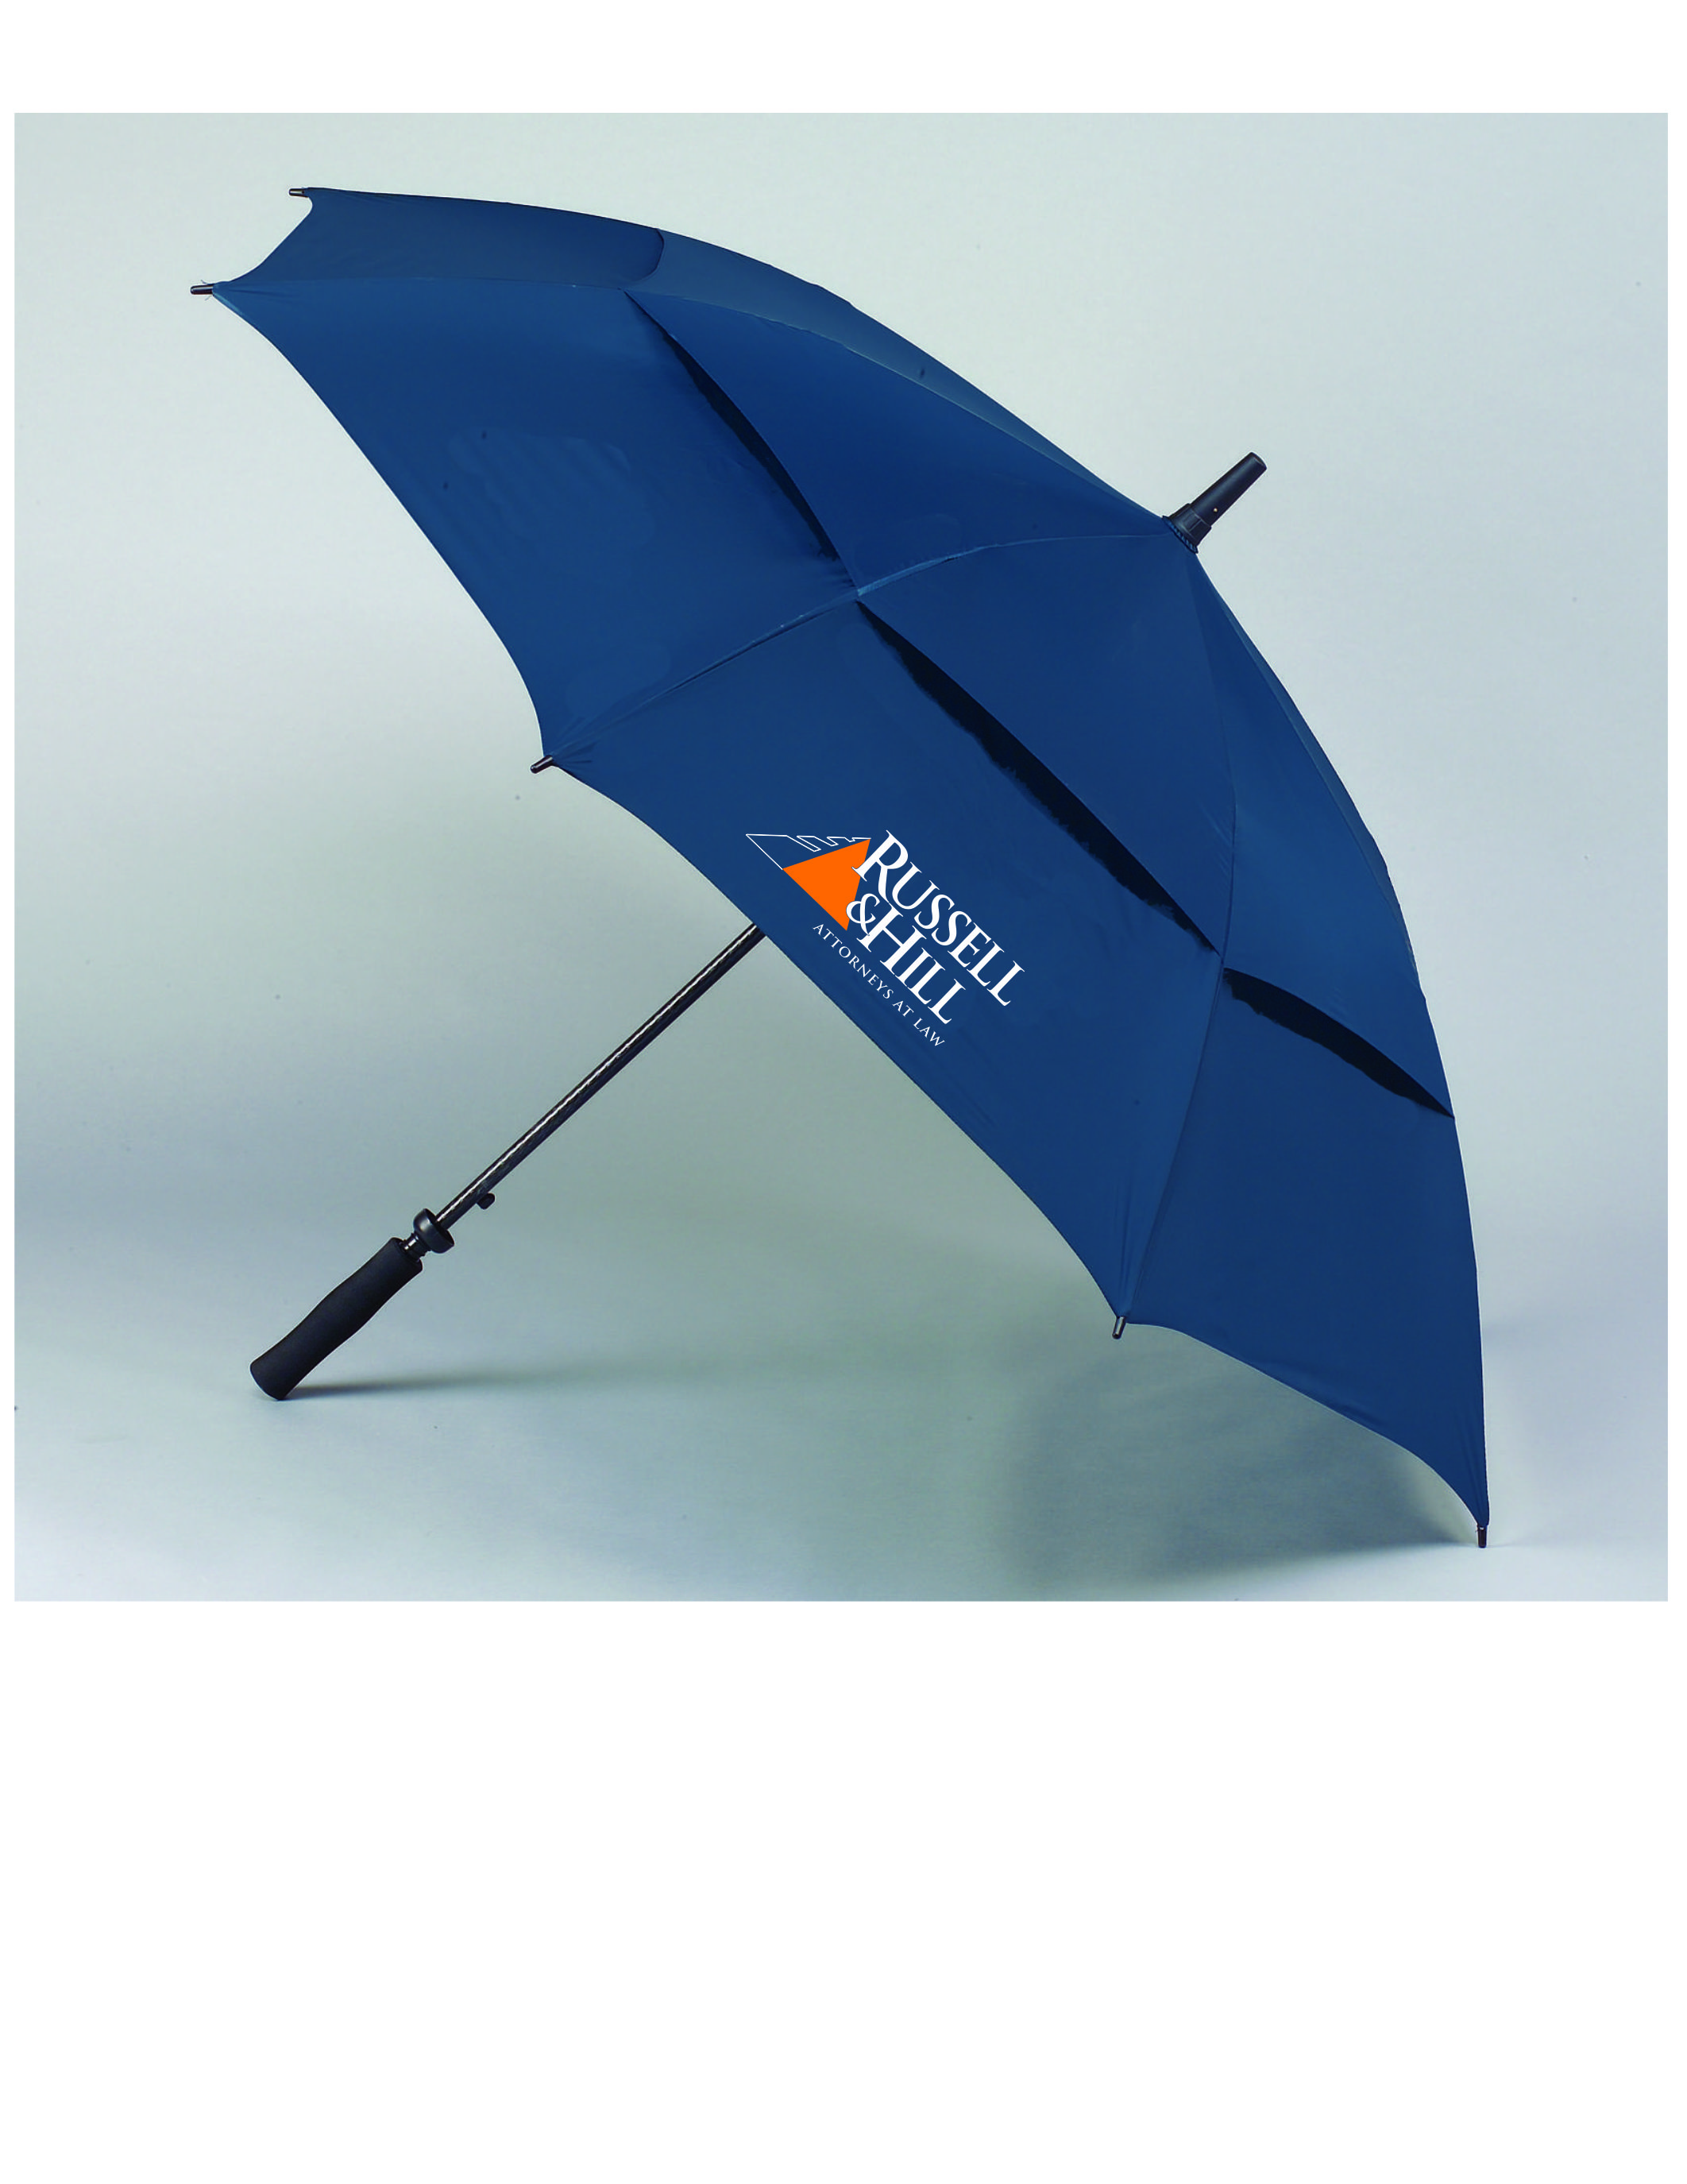 quality umbrellas for sale